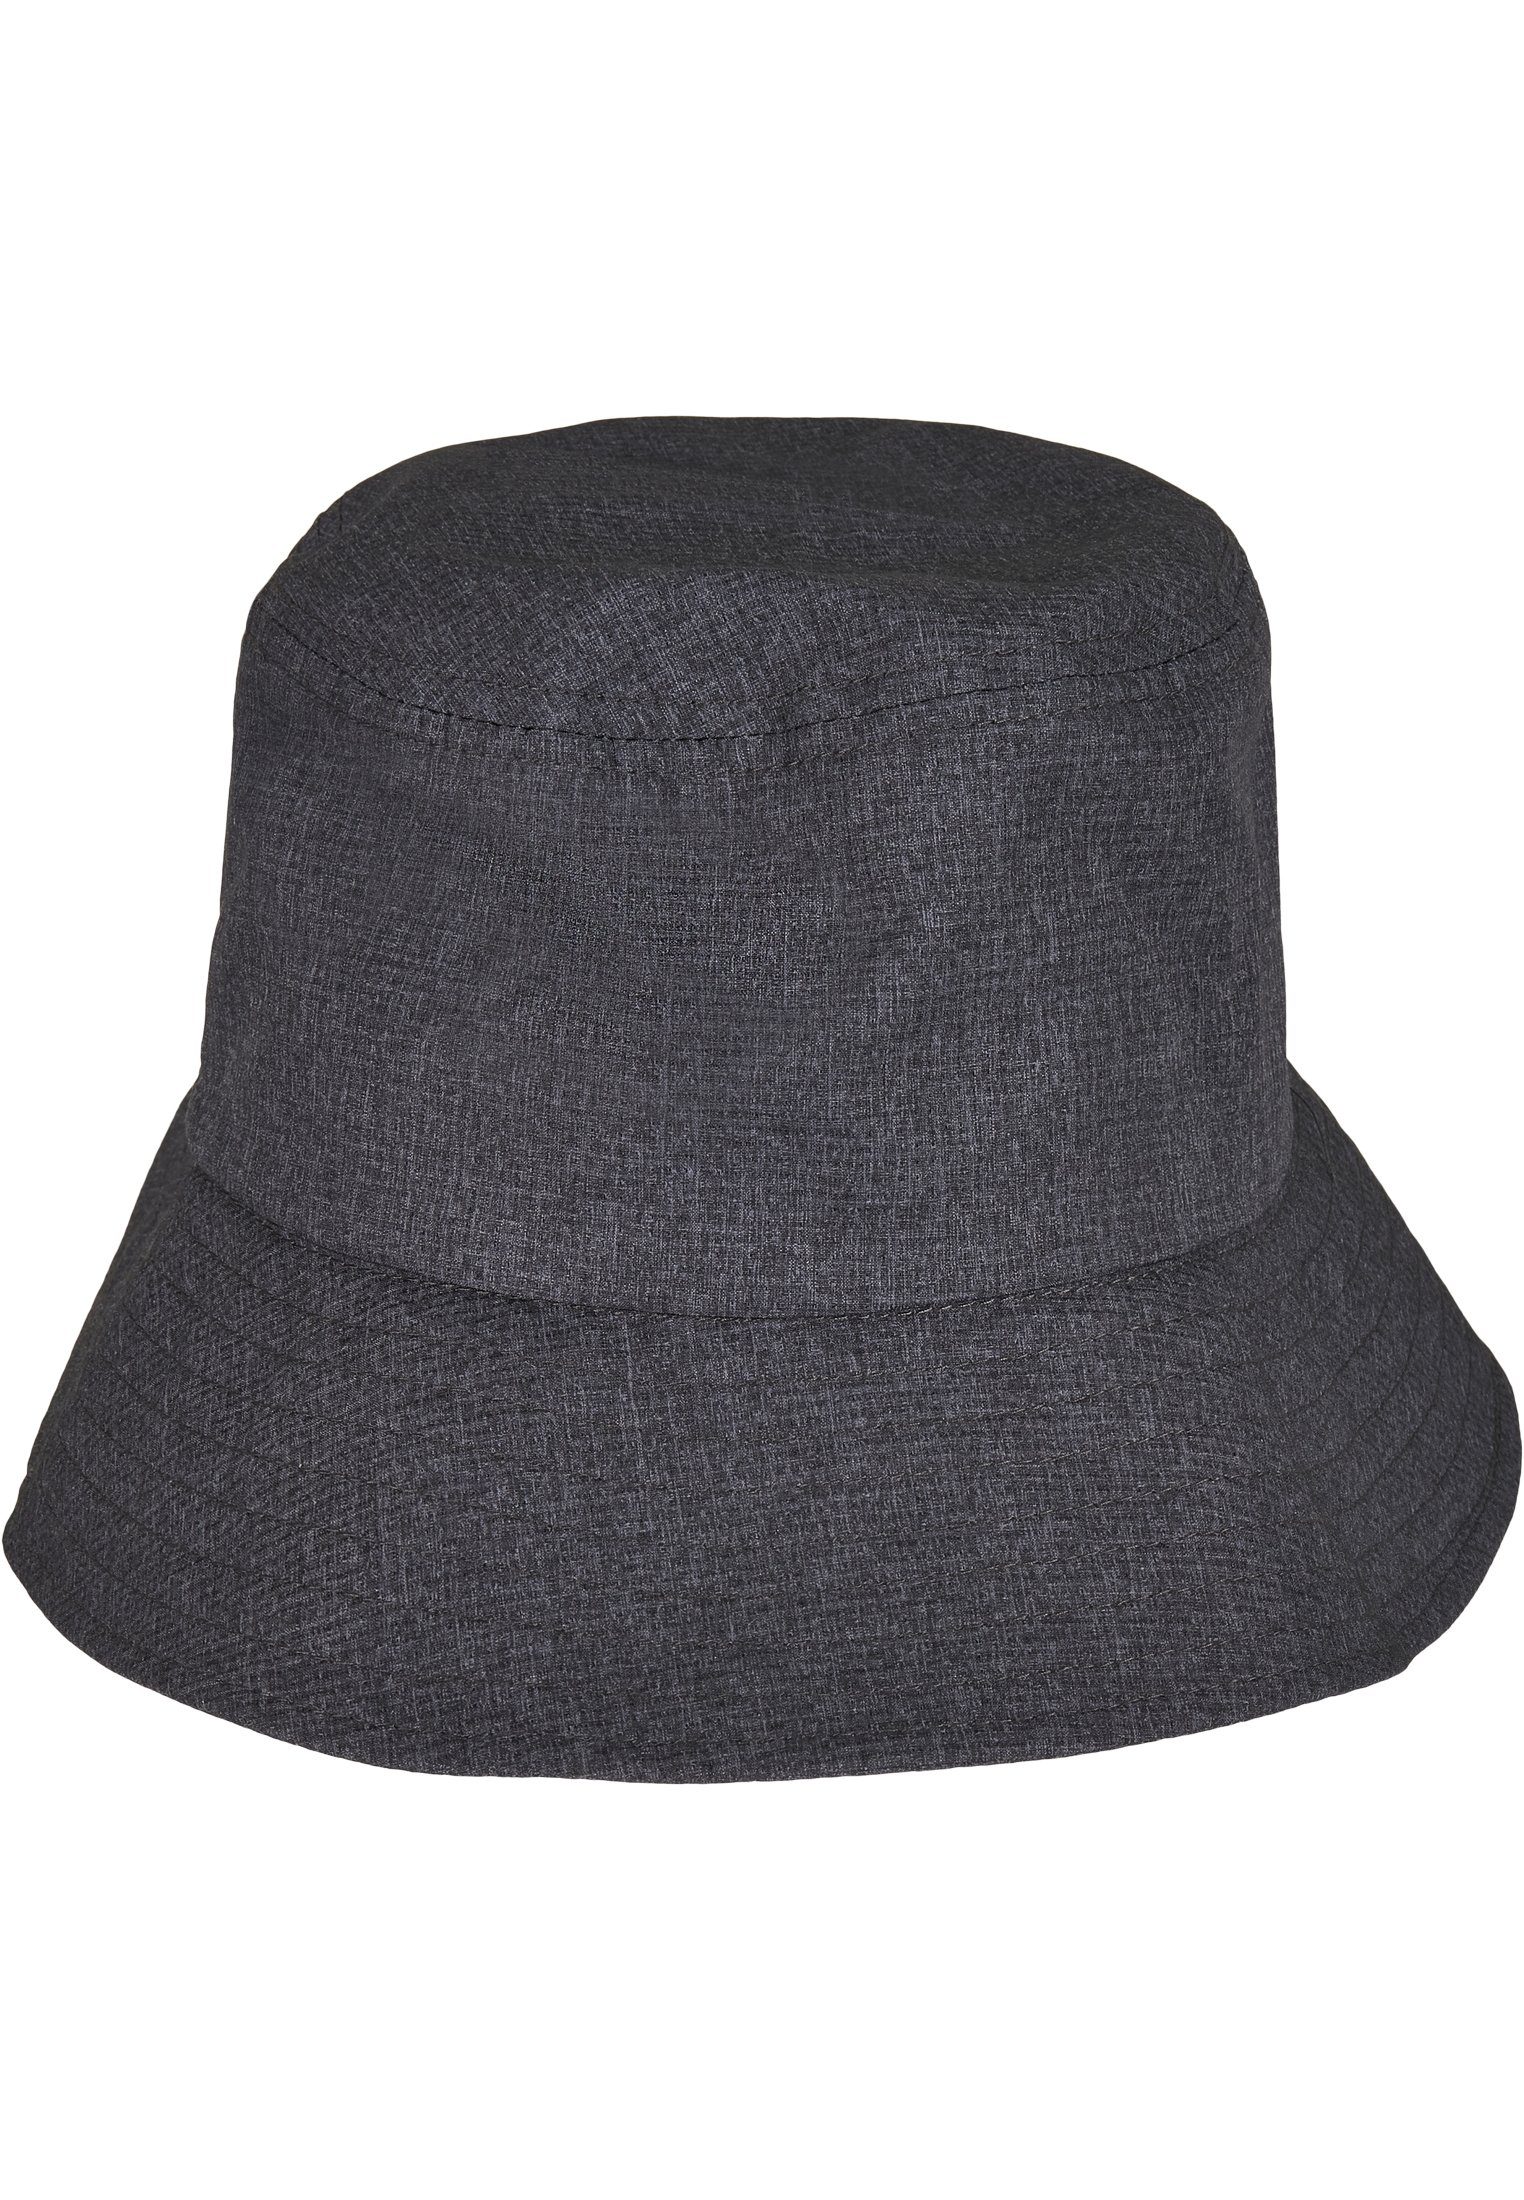 Beliebte Neuheiten sind online zu Flexfit Flex Cap Bucket Hat Adjustable Flexfit Hat Bucket heathergrey